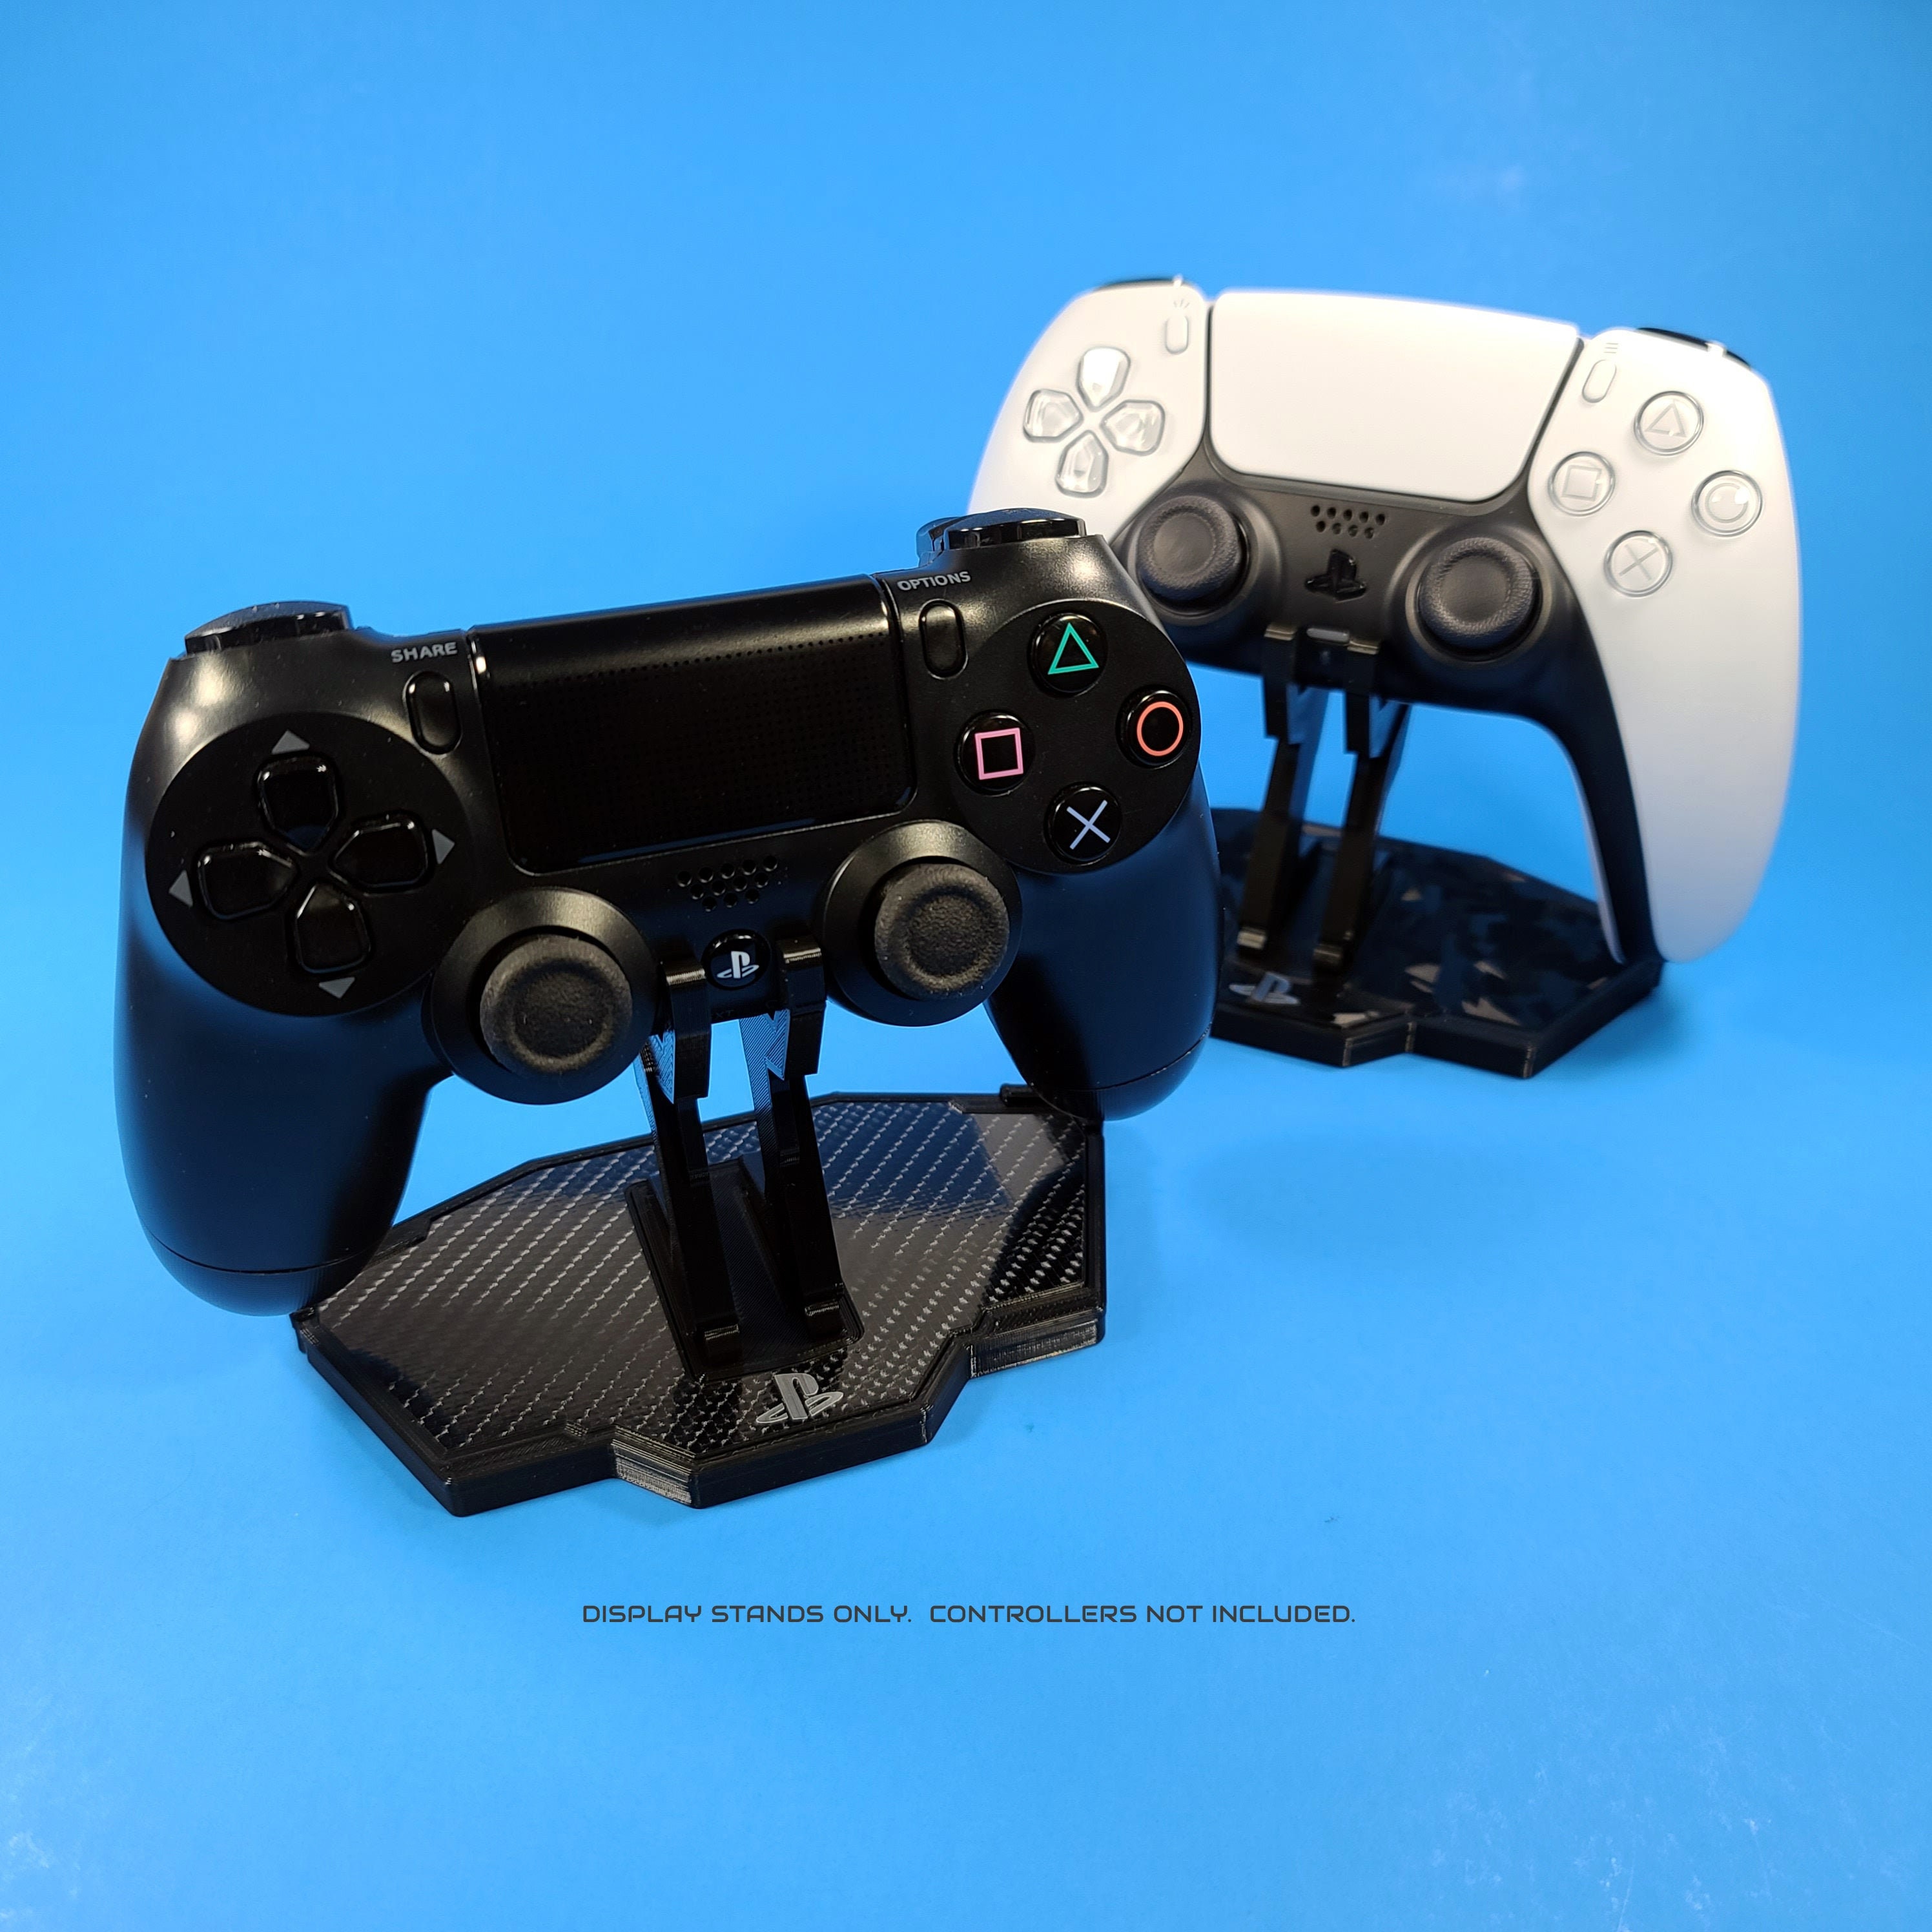 Retro Fighters Defender son los mandos de PS1 y PS2 inalámbricos